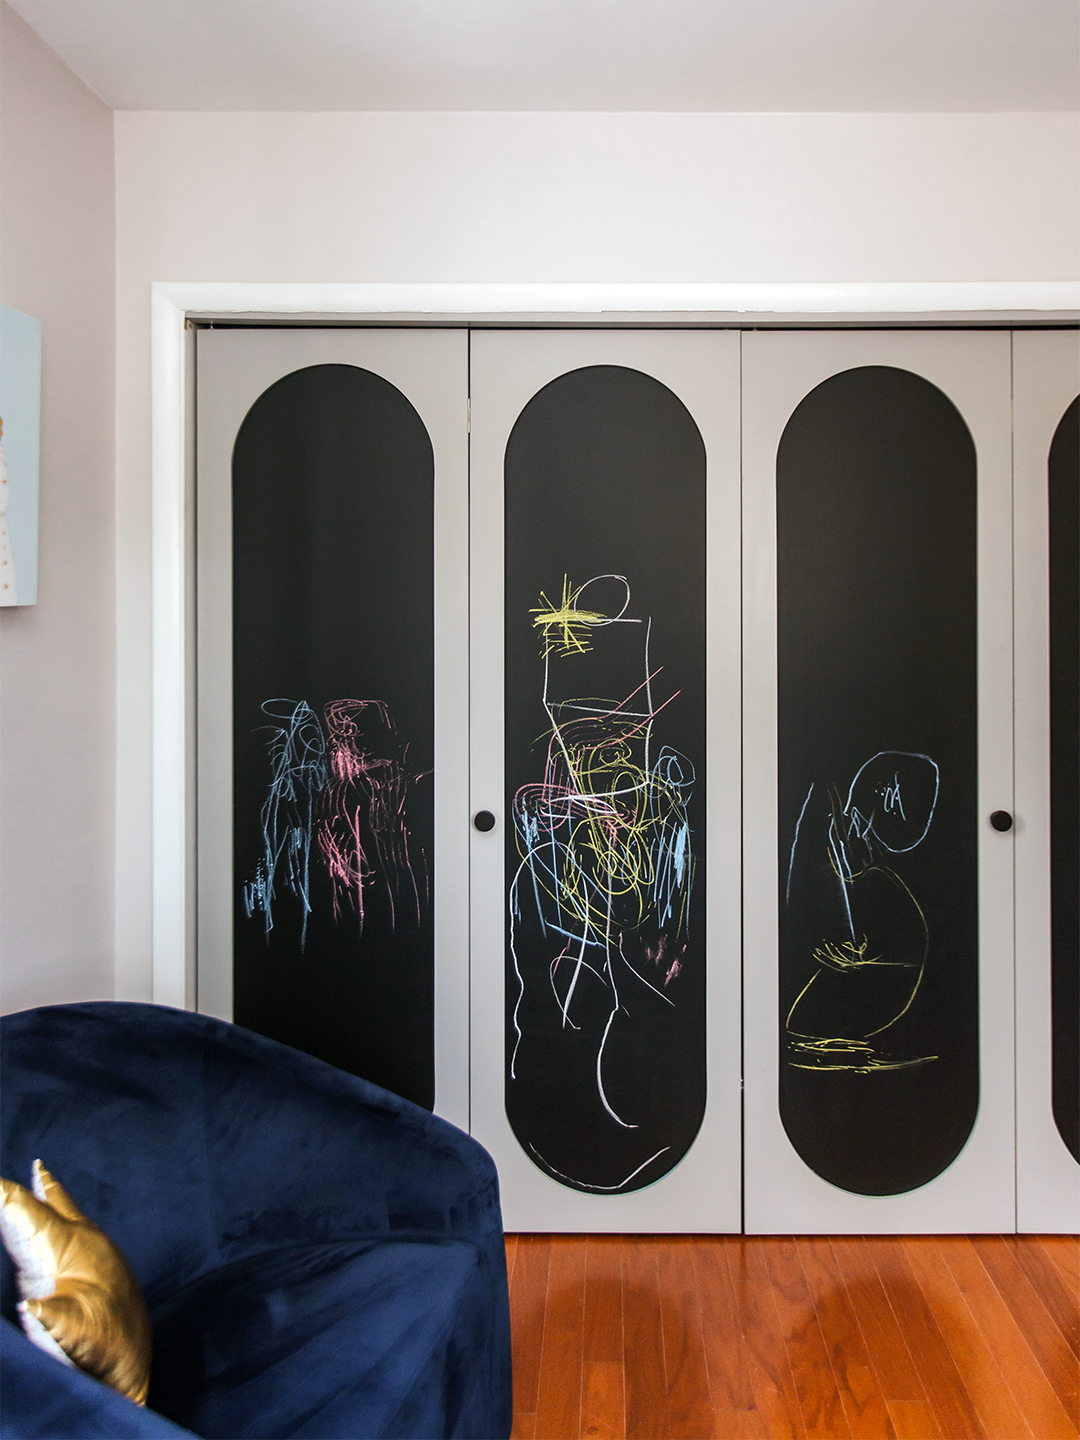 3 Ways to Reimagine Your Home's Bifold Closet Doors